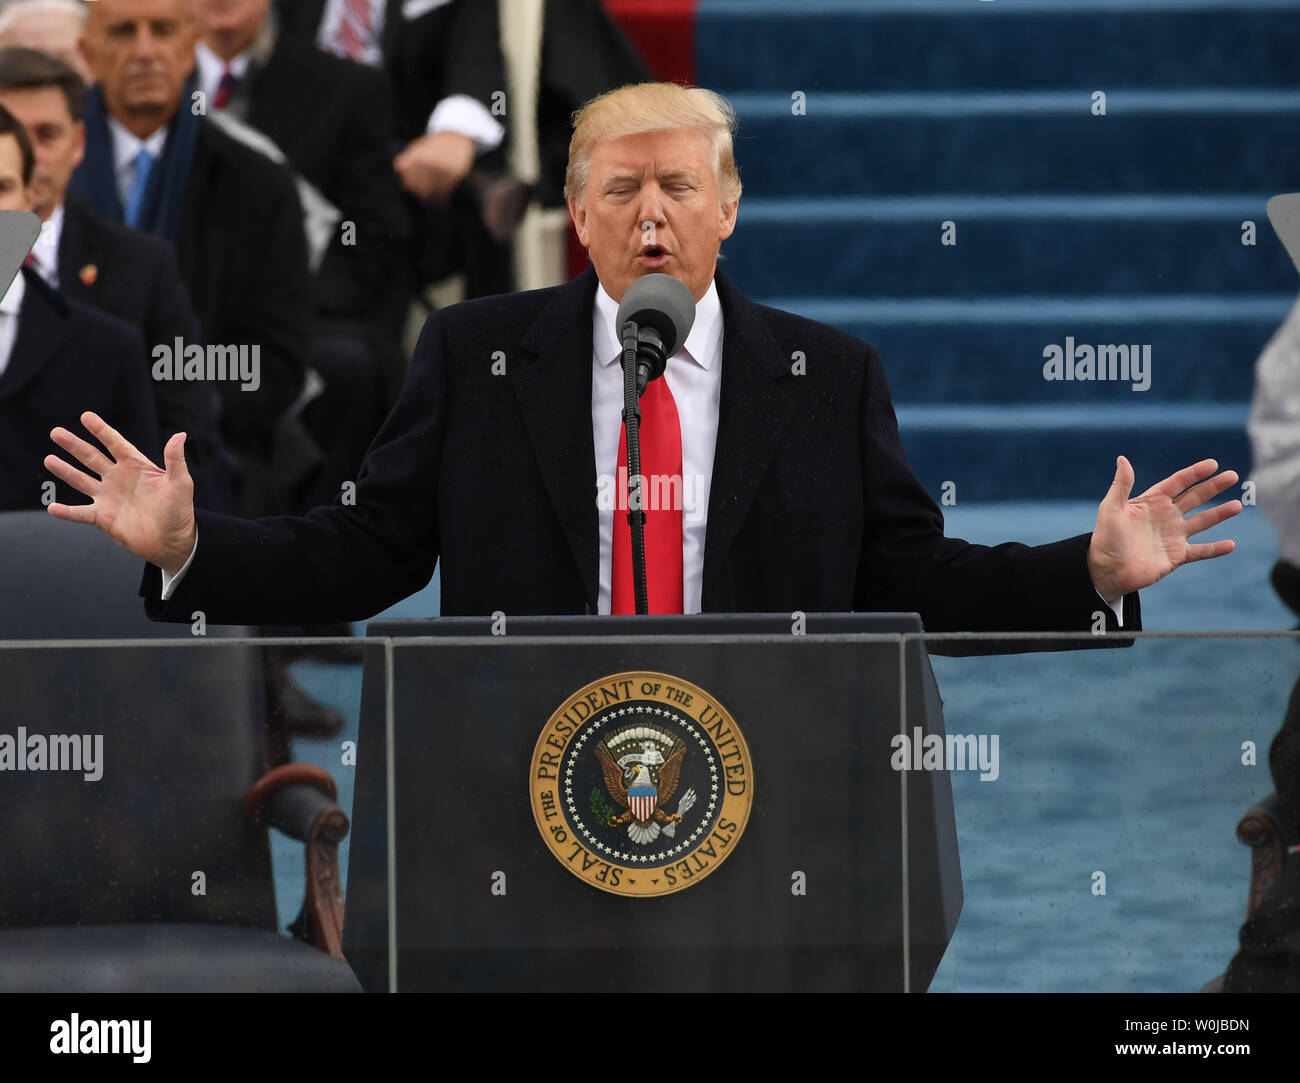 Le président Donald Trump offre son discours lors de l'inauguration le 20 janvier 2017 à Washington, D.C. Trump est devenu le 45e président des États-Unis. Photo de Pat Benic/UPI Banque D'Images